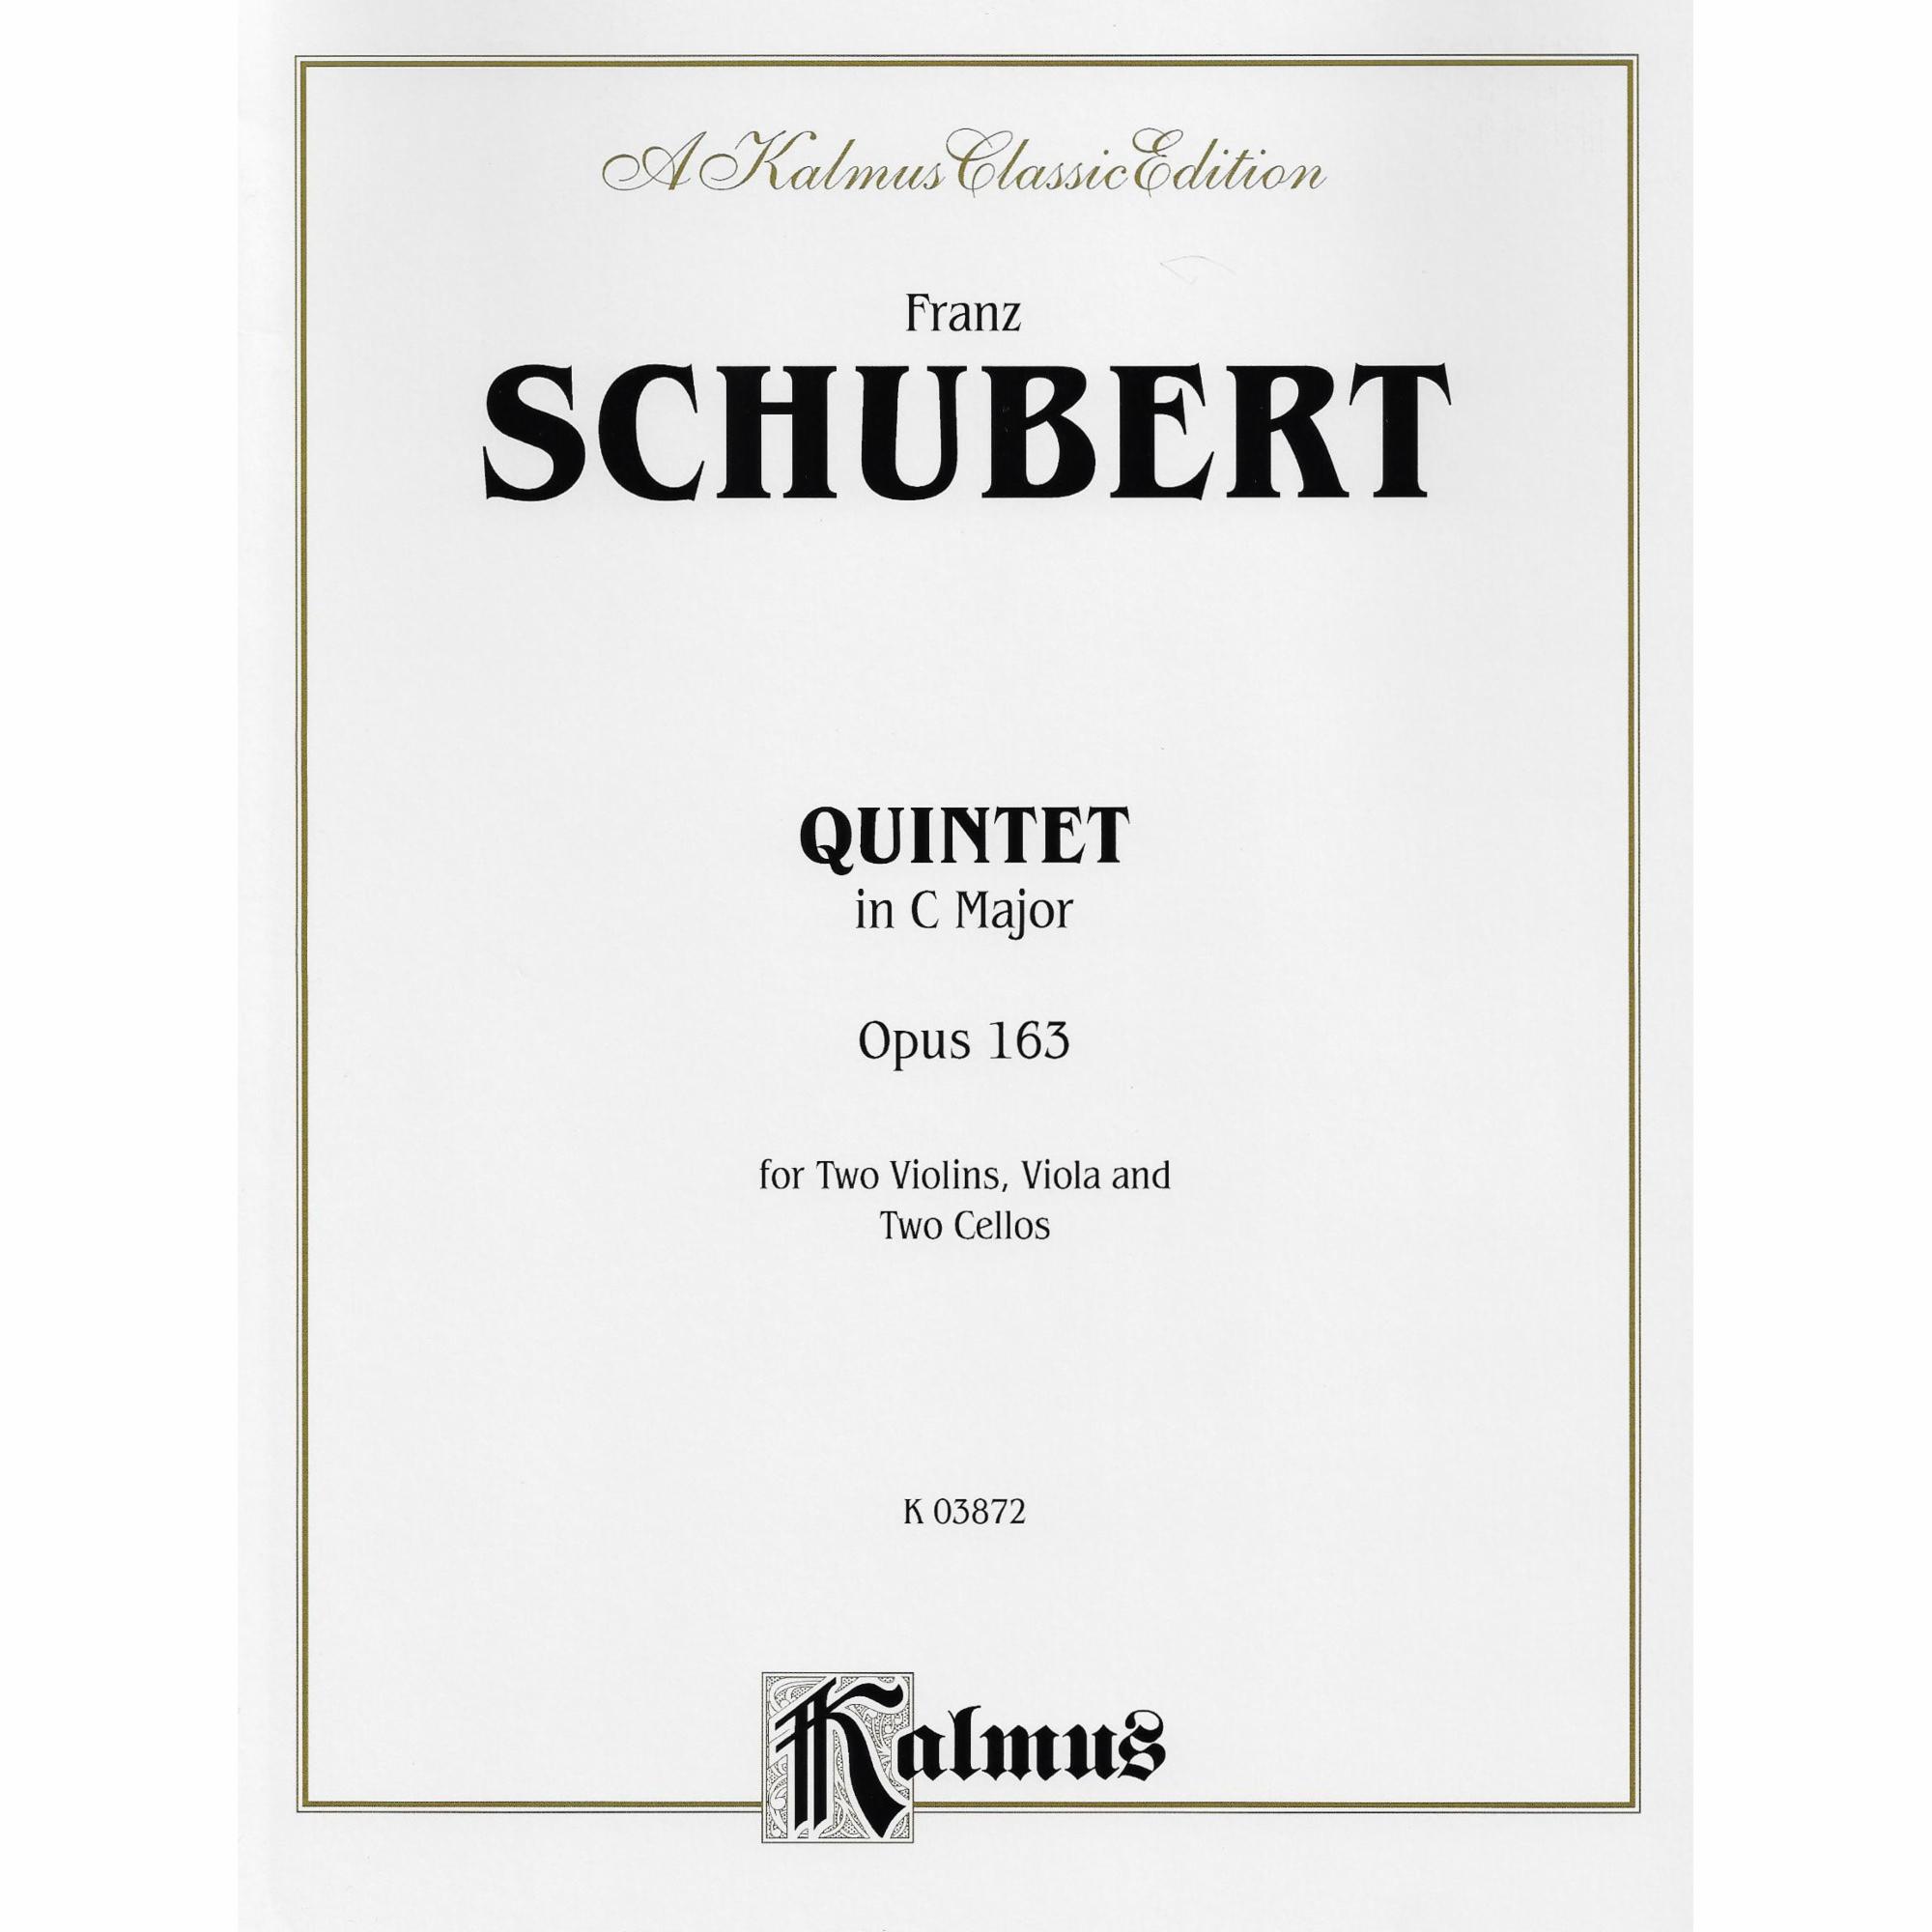 Schubert -- Cello Quintet in C Major, D. 956